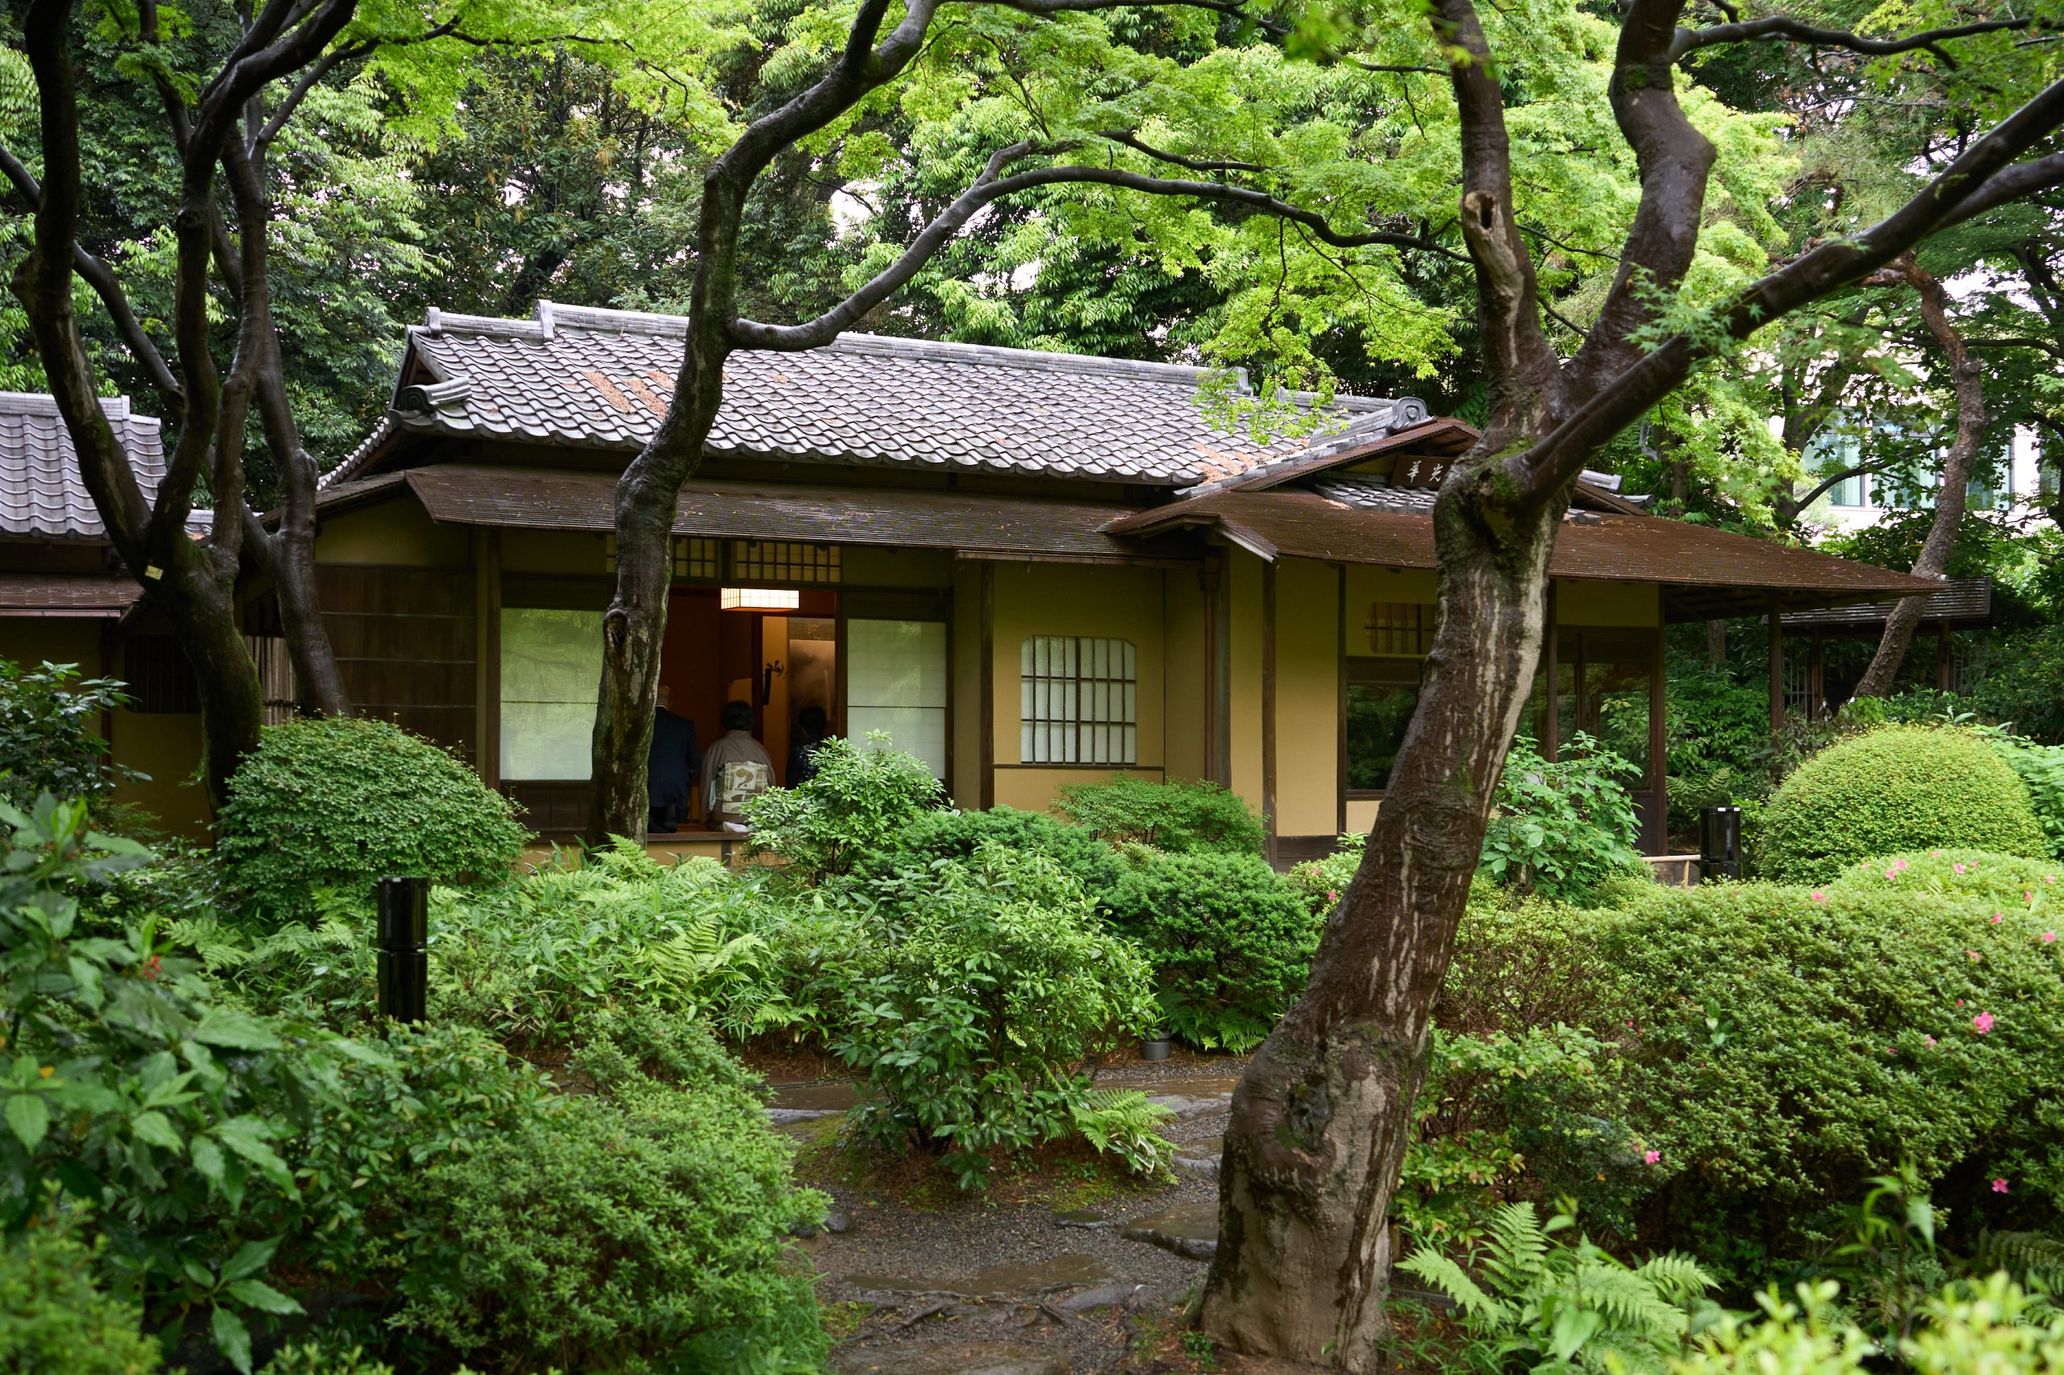 庭園美術館の日本庭園にある茶室「光華」ではお茶会も催された。同茶室の茶碗は杉本博司が手掛けている。